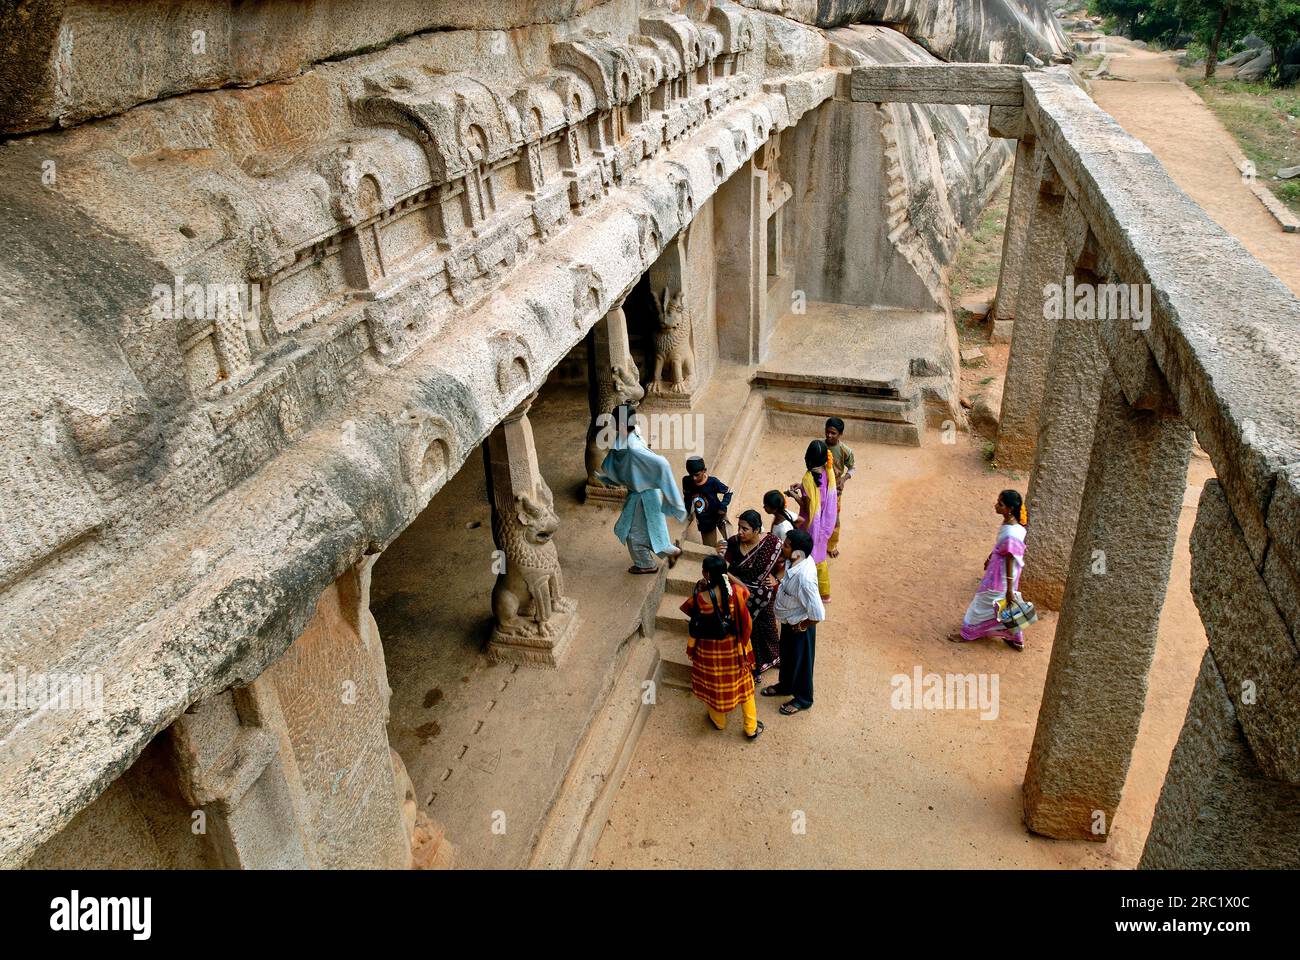 Ramanuja Mandapam à Mahabalipuram Mamallapuram près de Chennai, Tamil Nadu, Inde du Sud, Inde, Asie. Site du patrimoine mondial de l'UNESCO Banque D'Images